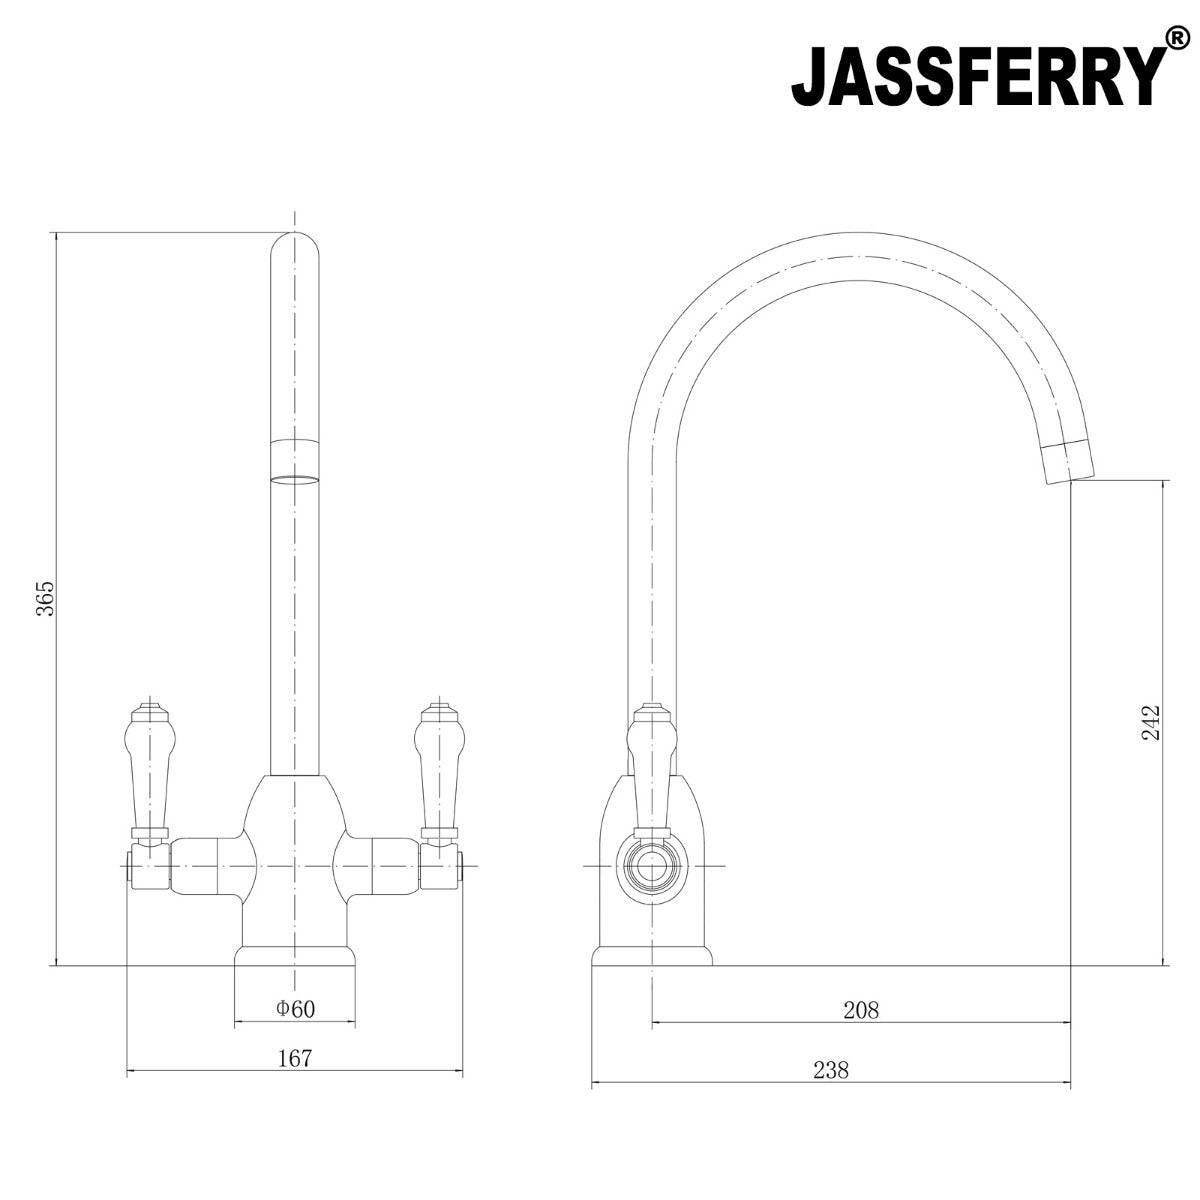 JassferryJASSFERRY New Kitchen Sink Mixer Taps Two Handles Swivel Spout Chrome PolishedKitchen taps